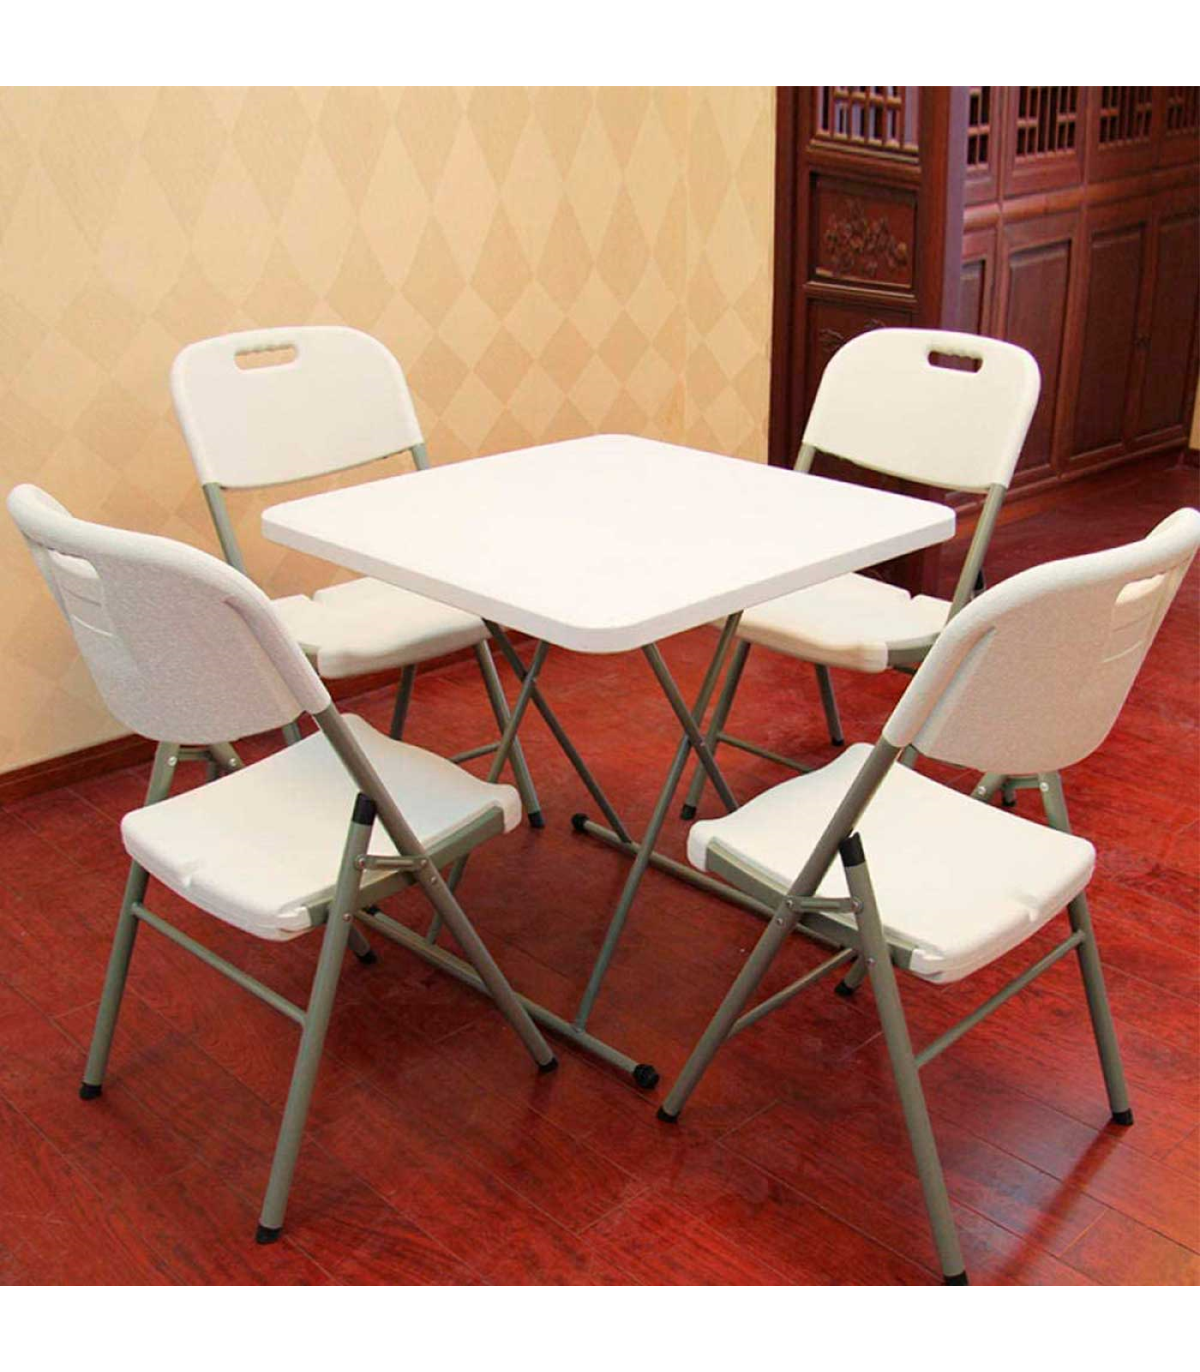 Mesa de Camping Plegable Portátil con portavasos mesas y sillas Juego de  traje - China Silla mesa, silla de Camping mesa